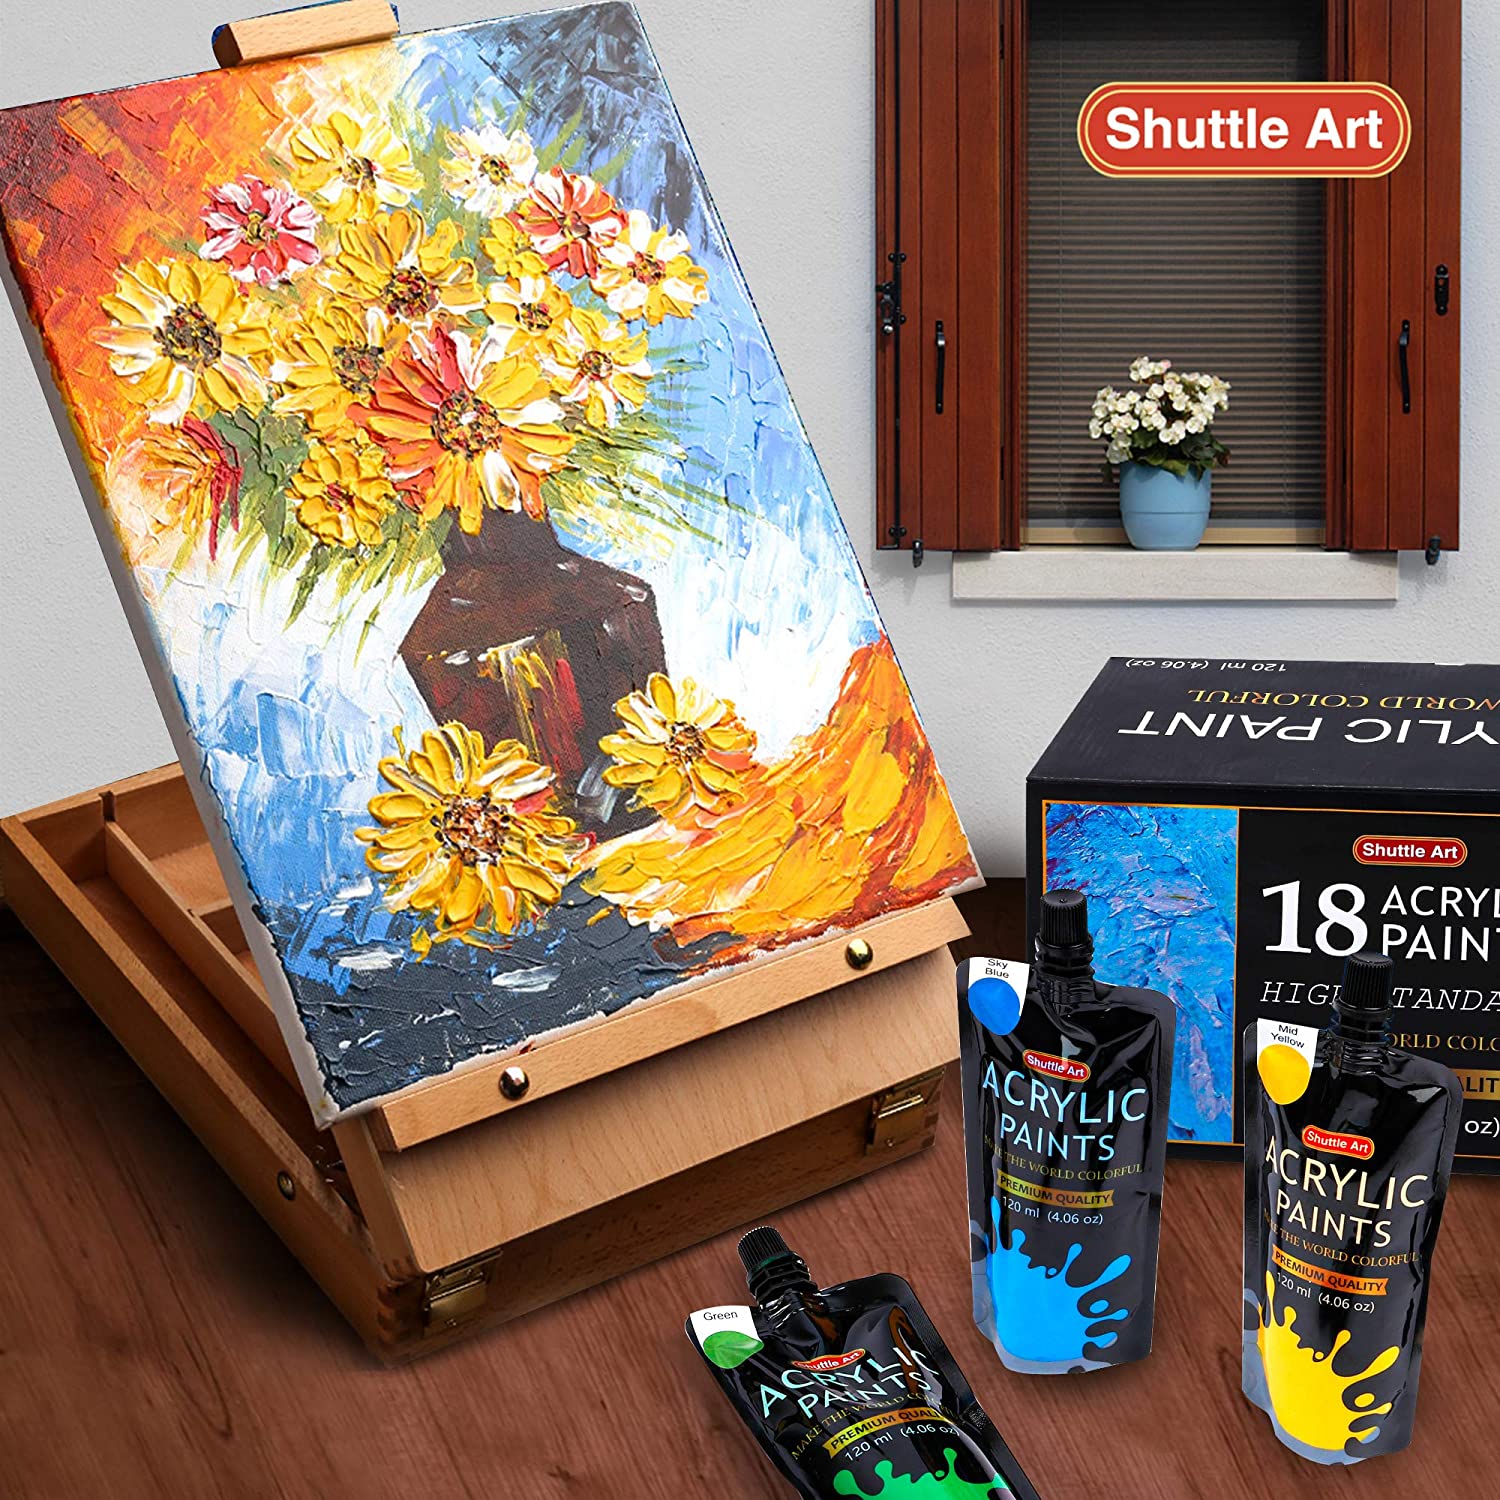 Pintura acrílica, juego de pintura acrílica Shuttle Art de 50 colores,  botellas de 60 ml, pigmentada rica, a prueba de agua, pinturas acrílicas de